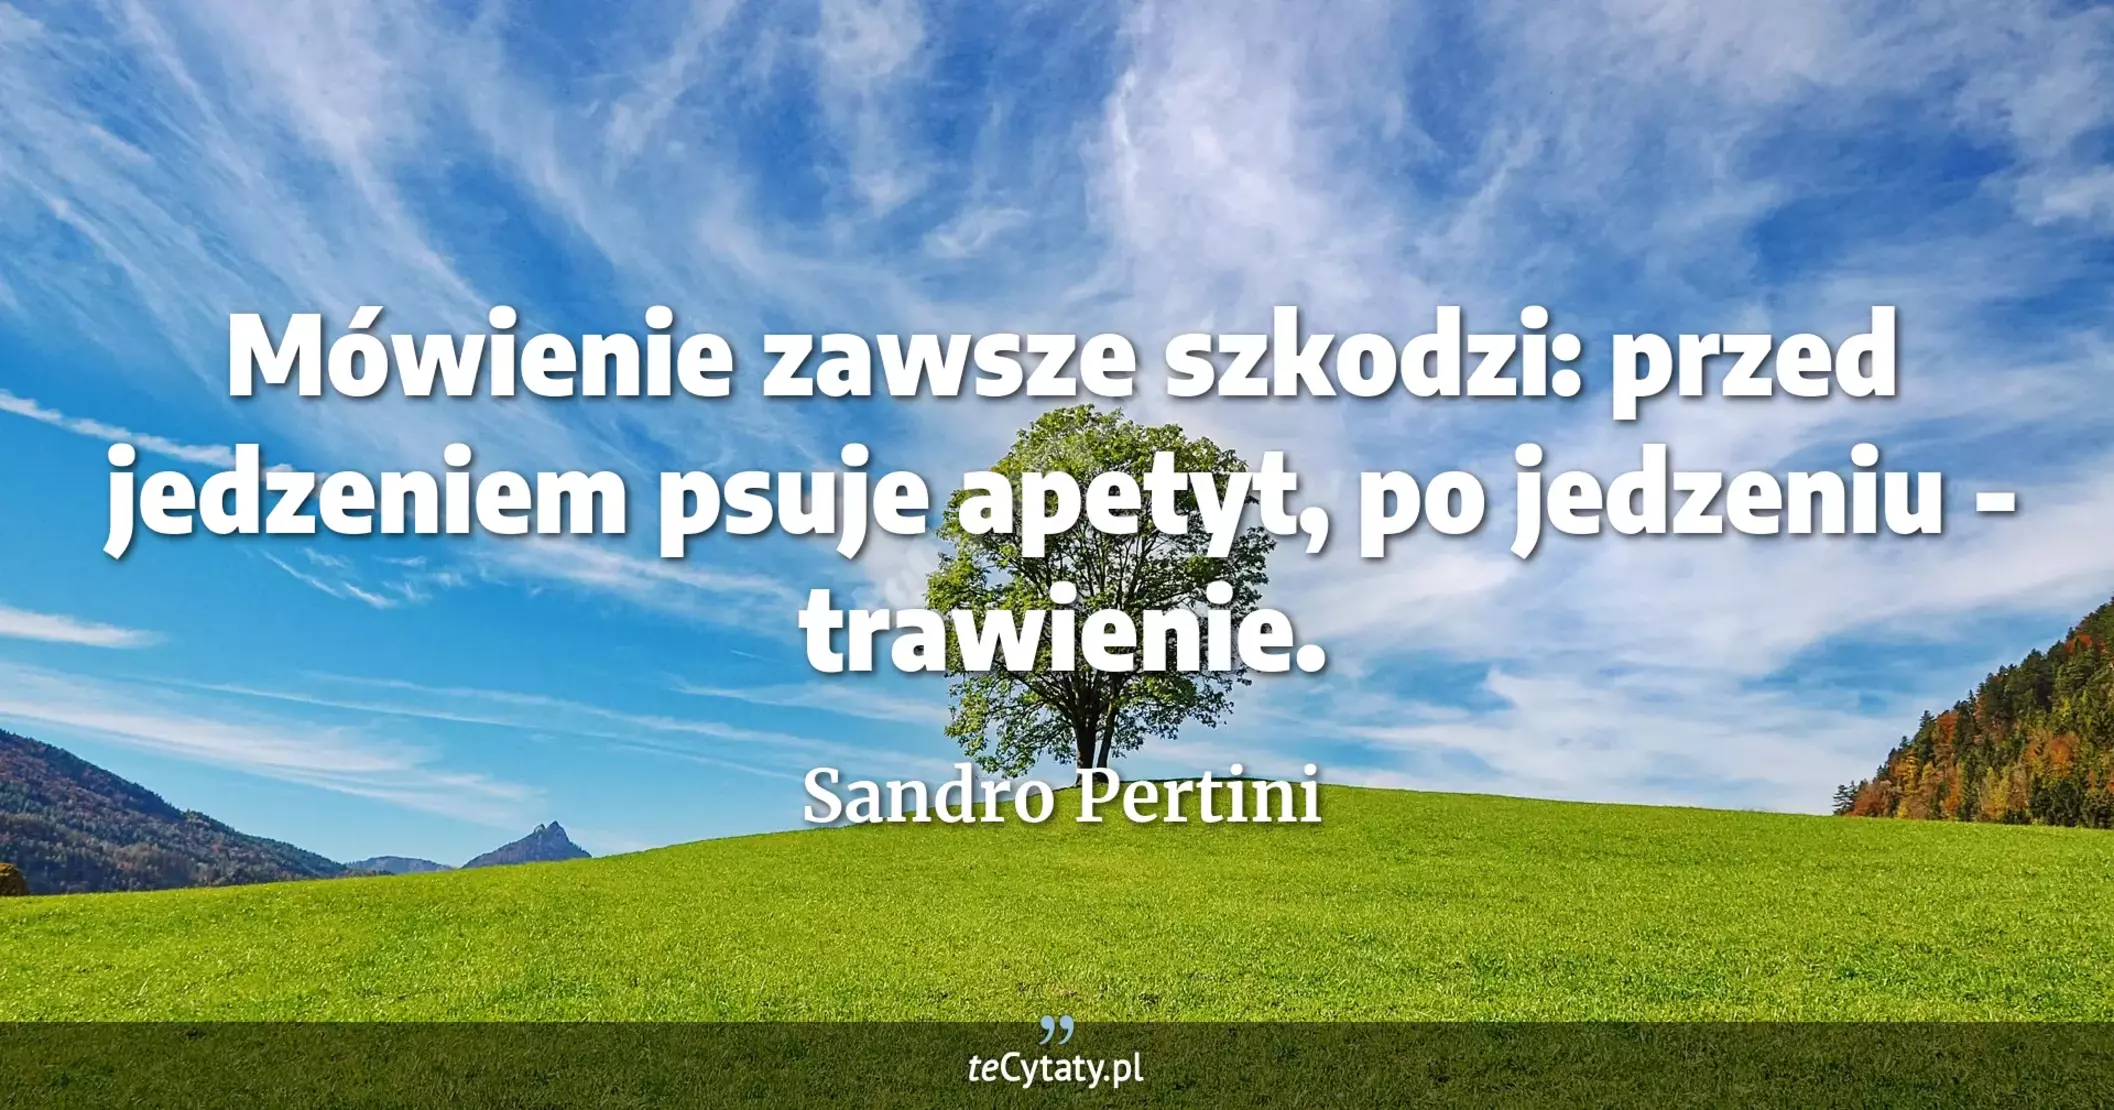 Mówienie zawsze szkodzi: przed jedzeniem psuje apetyt, po jedzeniu - trawienie. - Sandro Pertini